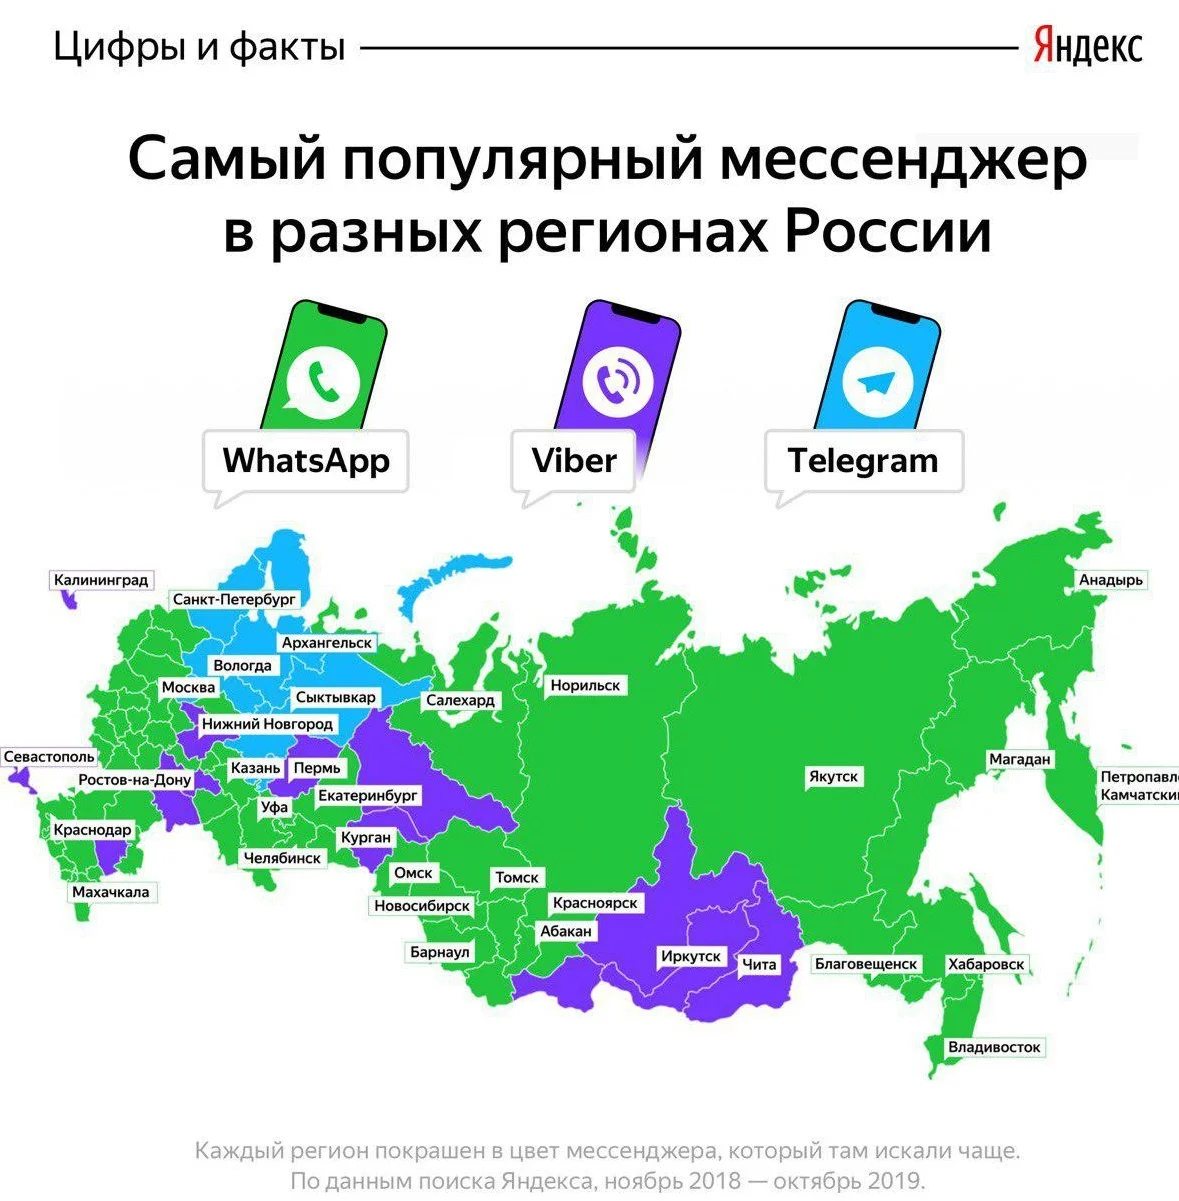 Яндекс назвал самые популярные мессенджеры в разных регионах России - фото 1